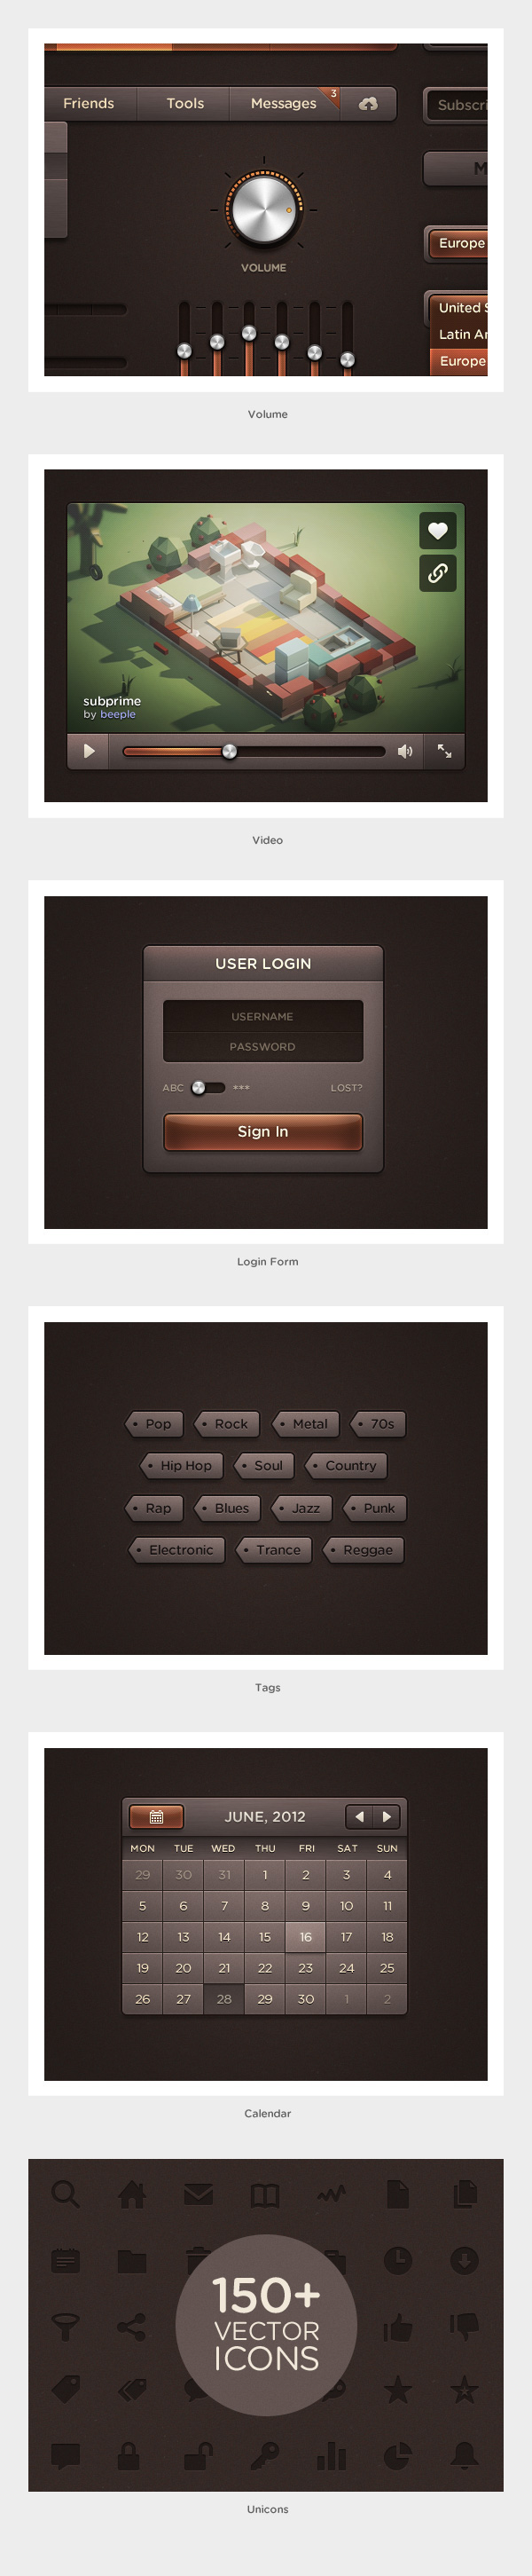 user interface icons Web design UI ui kit